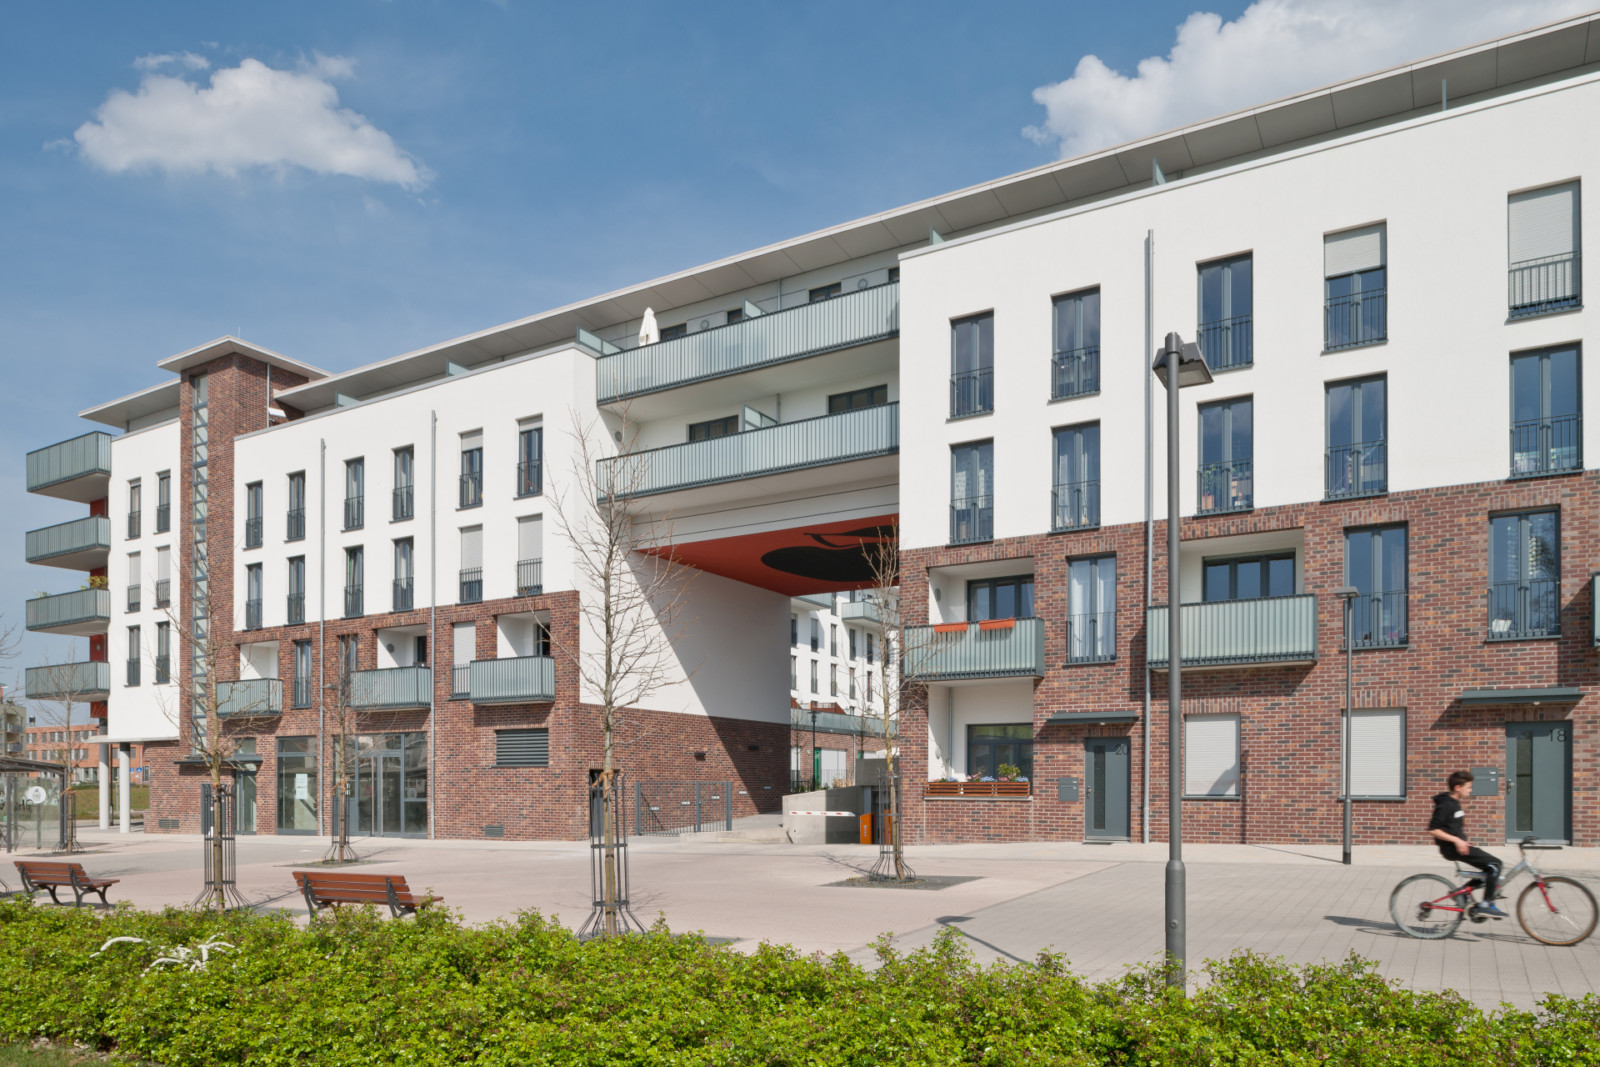 Die Unternehmensgruppe Nassauische Heimstätte hat in Frankfurt-Preungesheim am Gravensteiner Platz ein Wohnquartier mit 101 Neubauwohnungen fertig gestellt. Das Quartier wurde von der Architekturfotografin Anke Müllerklein fotografiert.